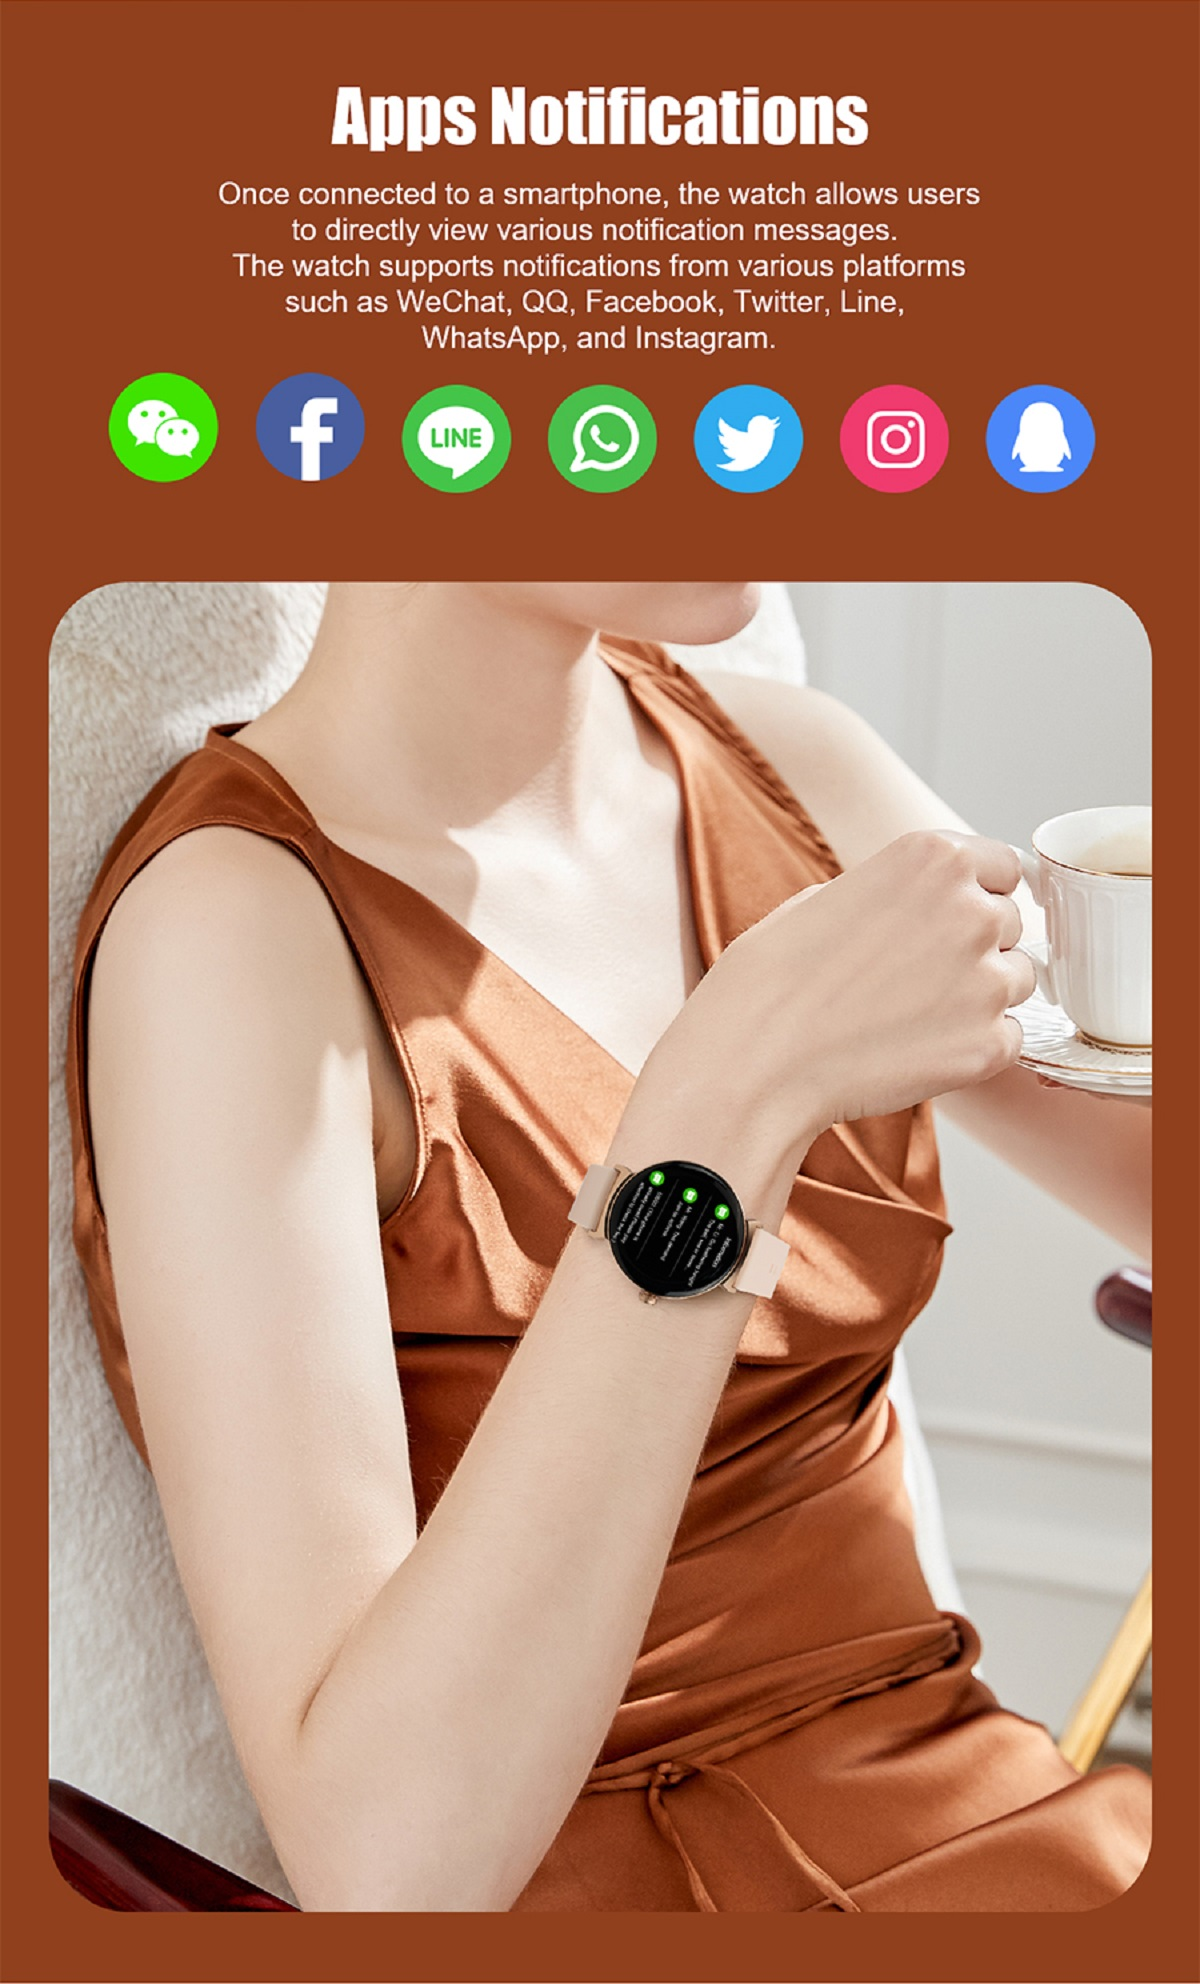 Pink Silikon, 240mm, Rund DT4New Aktivitätstracker Gold Smartwatch MIRUX BT-Anruf